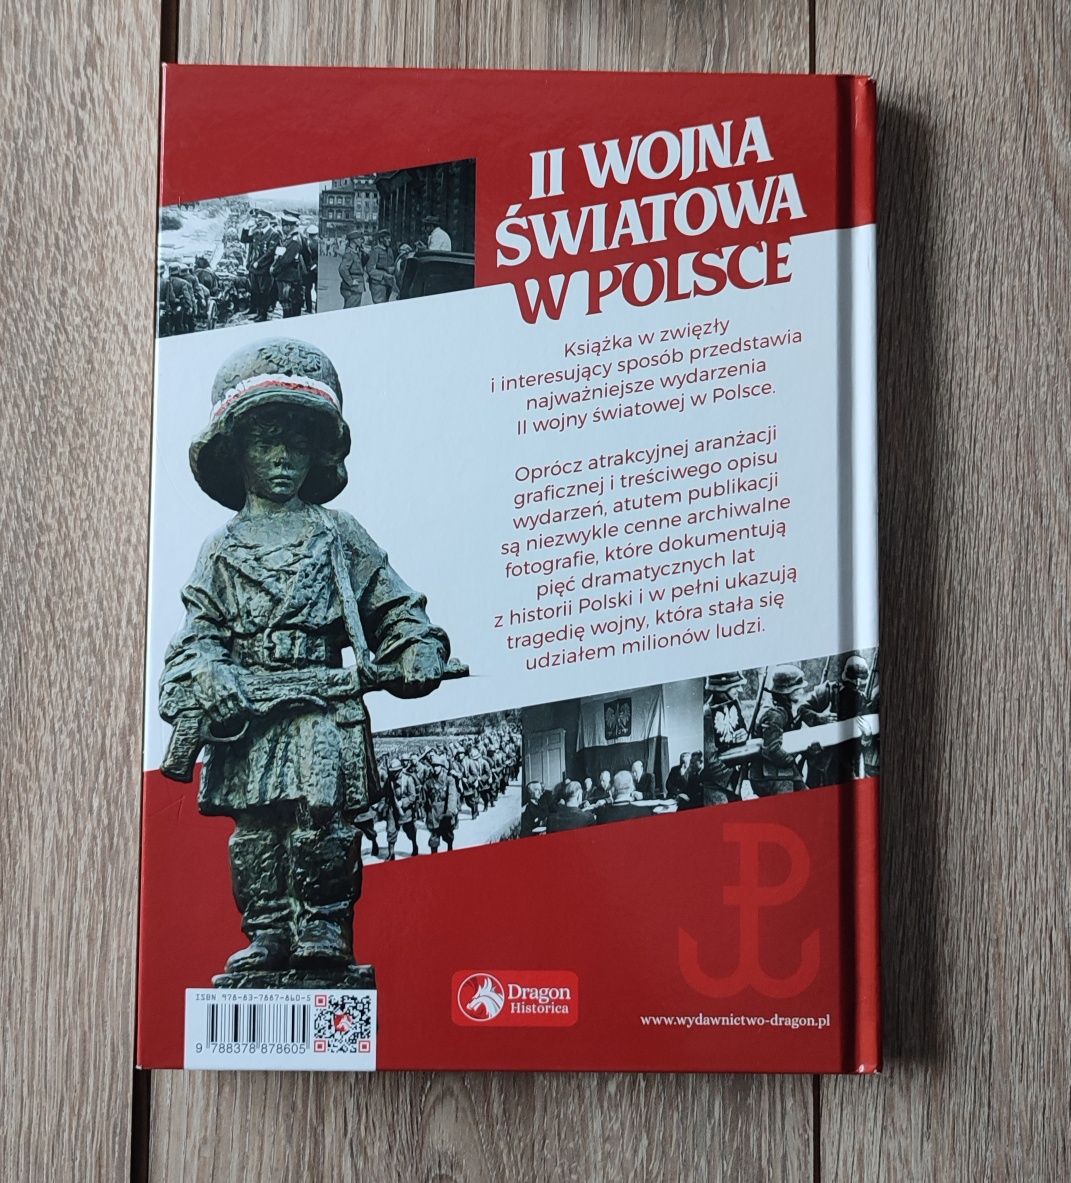 Adam Dylewski II Wojna Światowa w Polsce